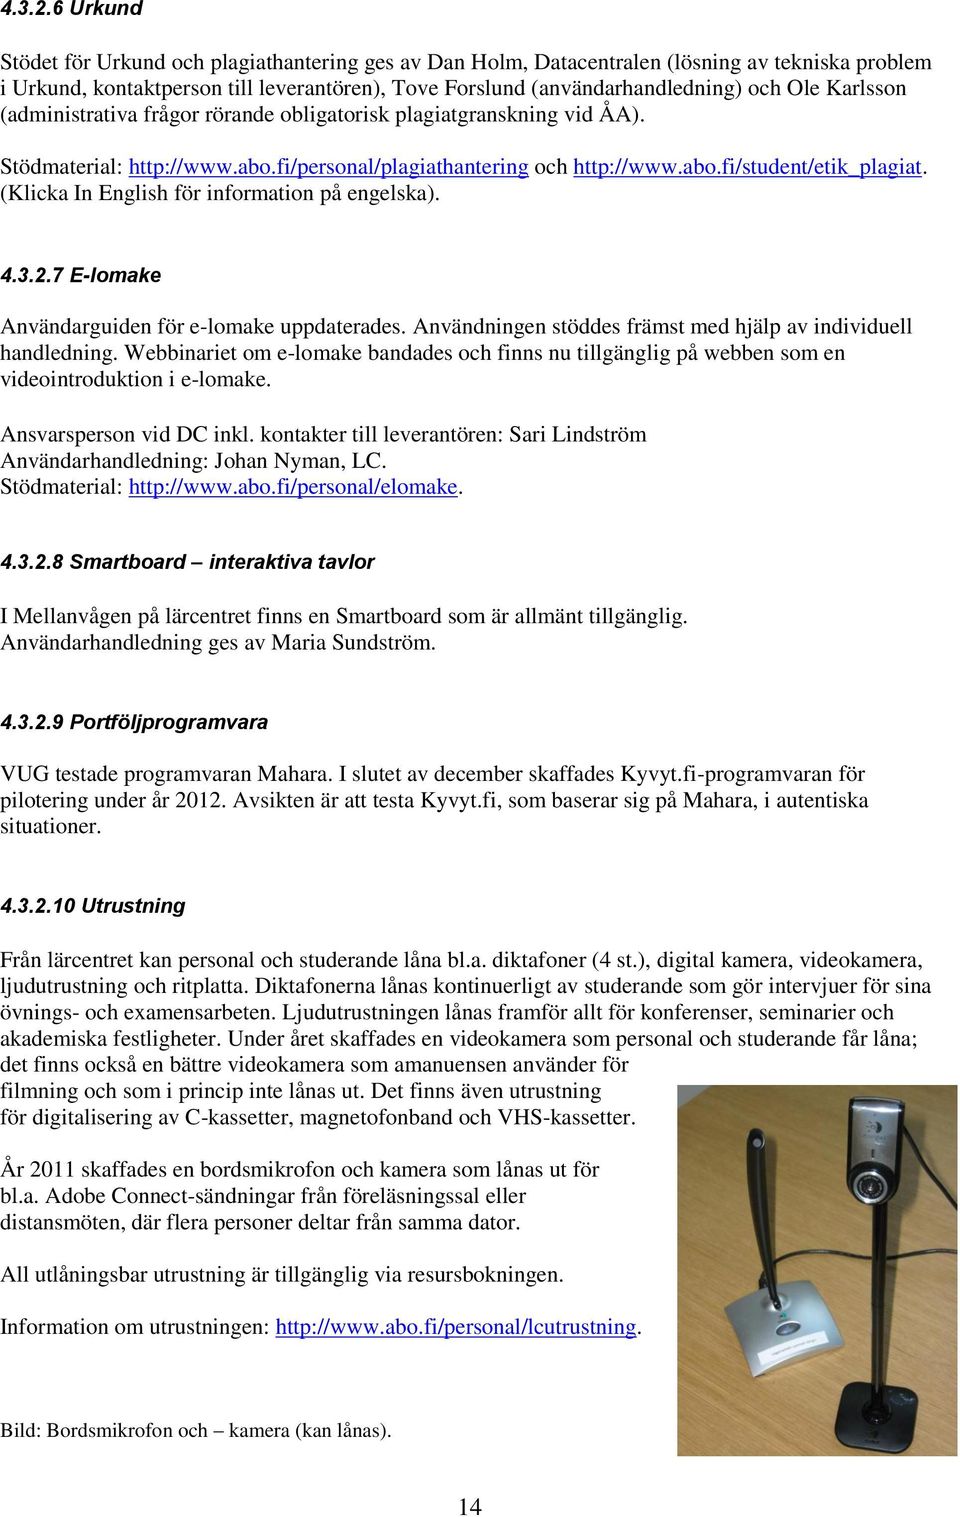 Karlsson (administrativa frågor rörande obligatorisk plagiatgranskning vid ÅA). Stödmaterial: http://www.abo.fi/personal/plagiathantering och http://www.abo.fi/student/etik_plagiat.